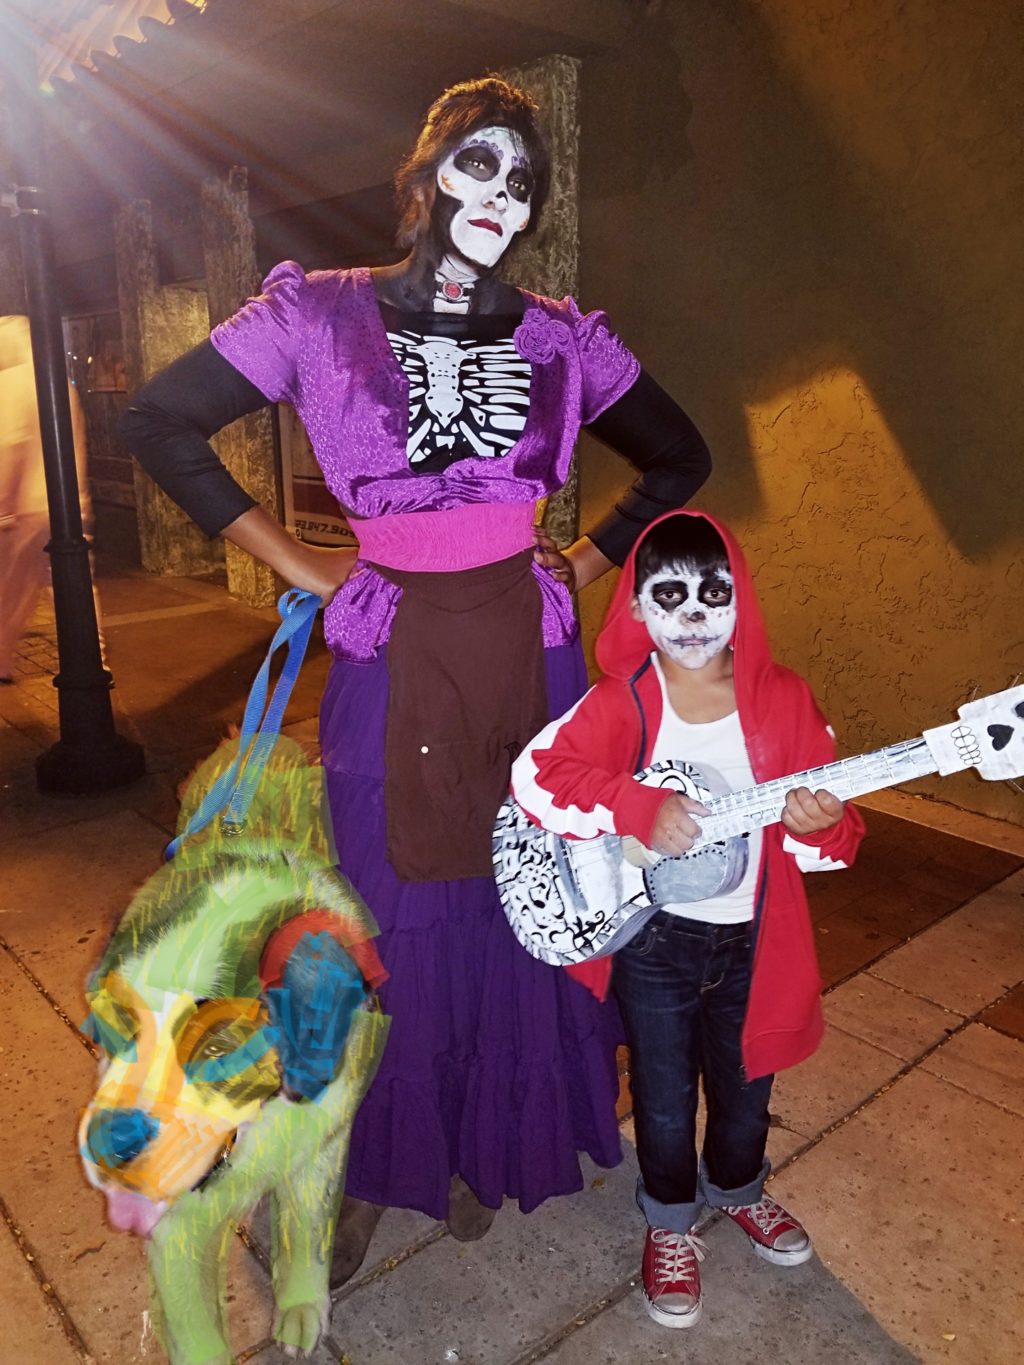 Coco S Family Halloween Costume Contest.